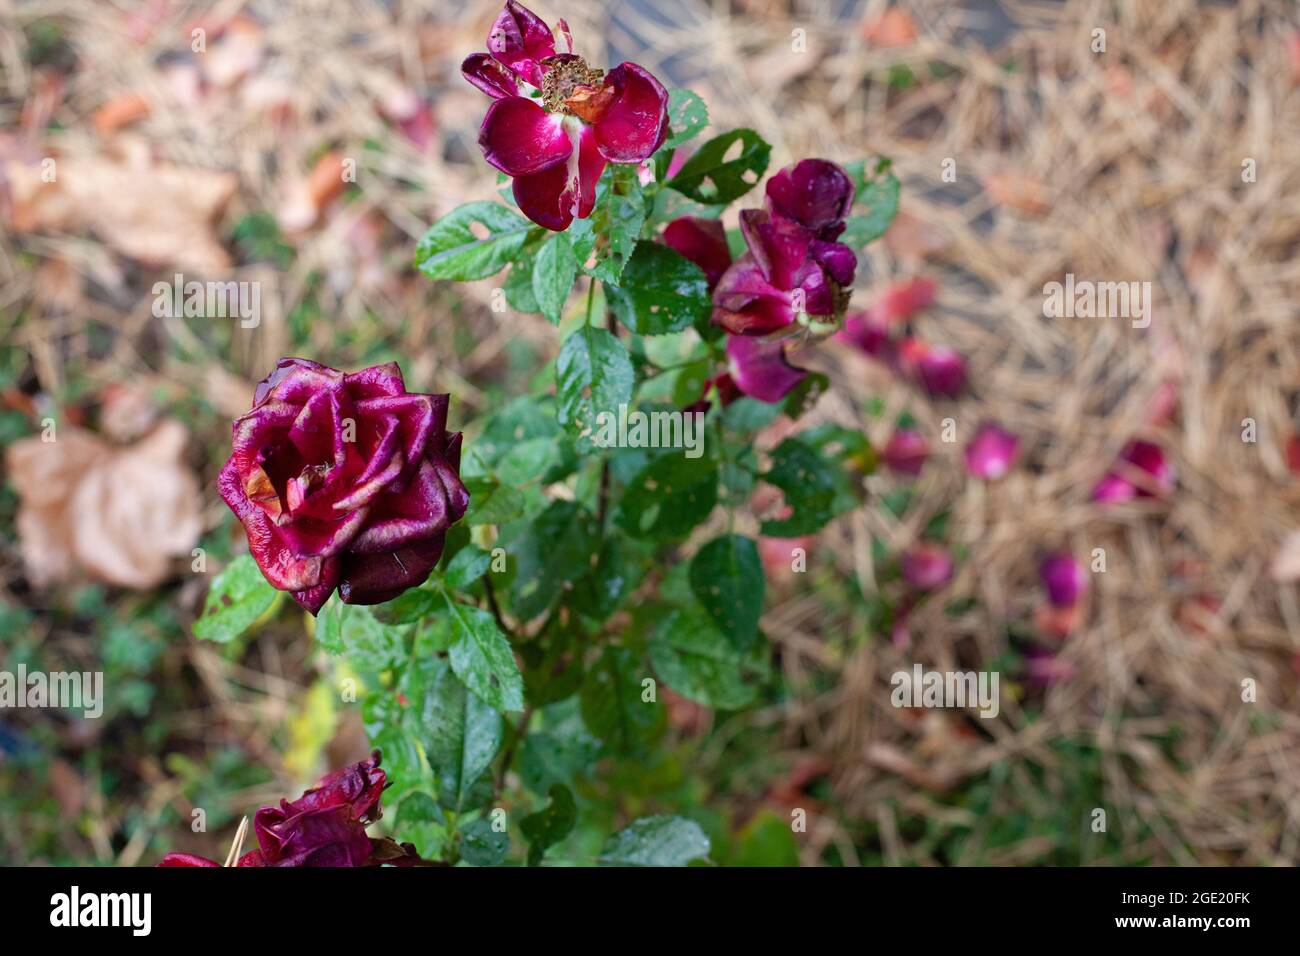 Vecchie rose nel giardino d'autunno. Cespuglio di rose con fiori di maroon e petali sbiaditi giacenti a terra con aghi di pino, angolo con sfondo sfocato Foto Stock